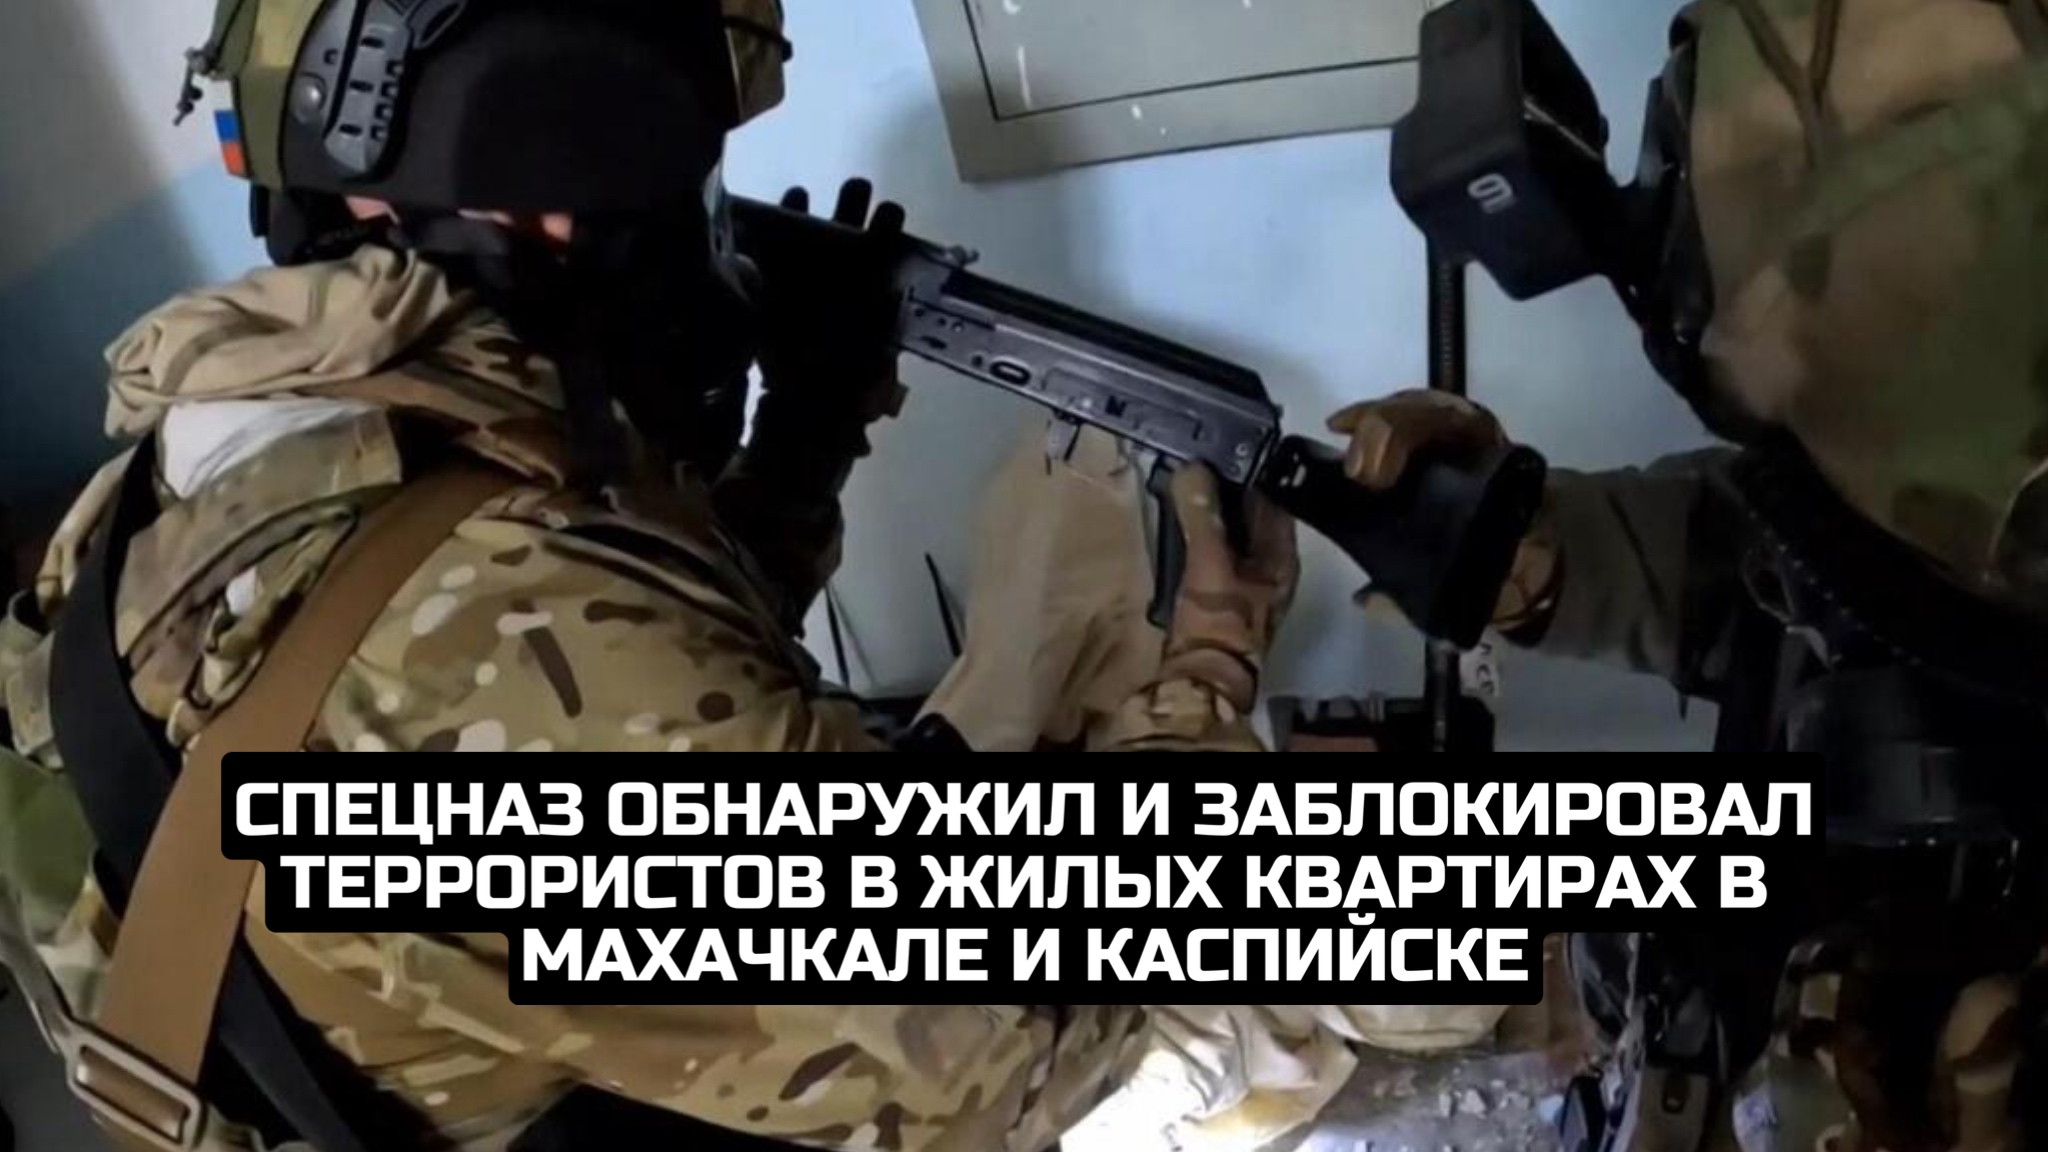 Спецназ обнаружил и заблокировал террористов в жилых квартирах в Махачкале и Каспийске